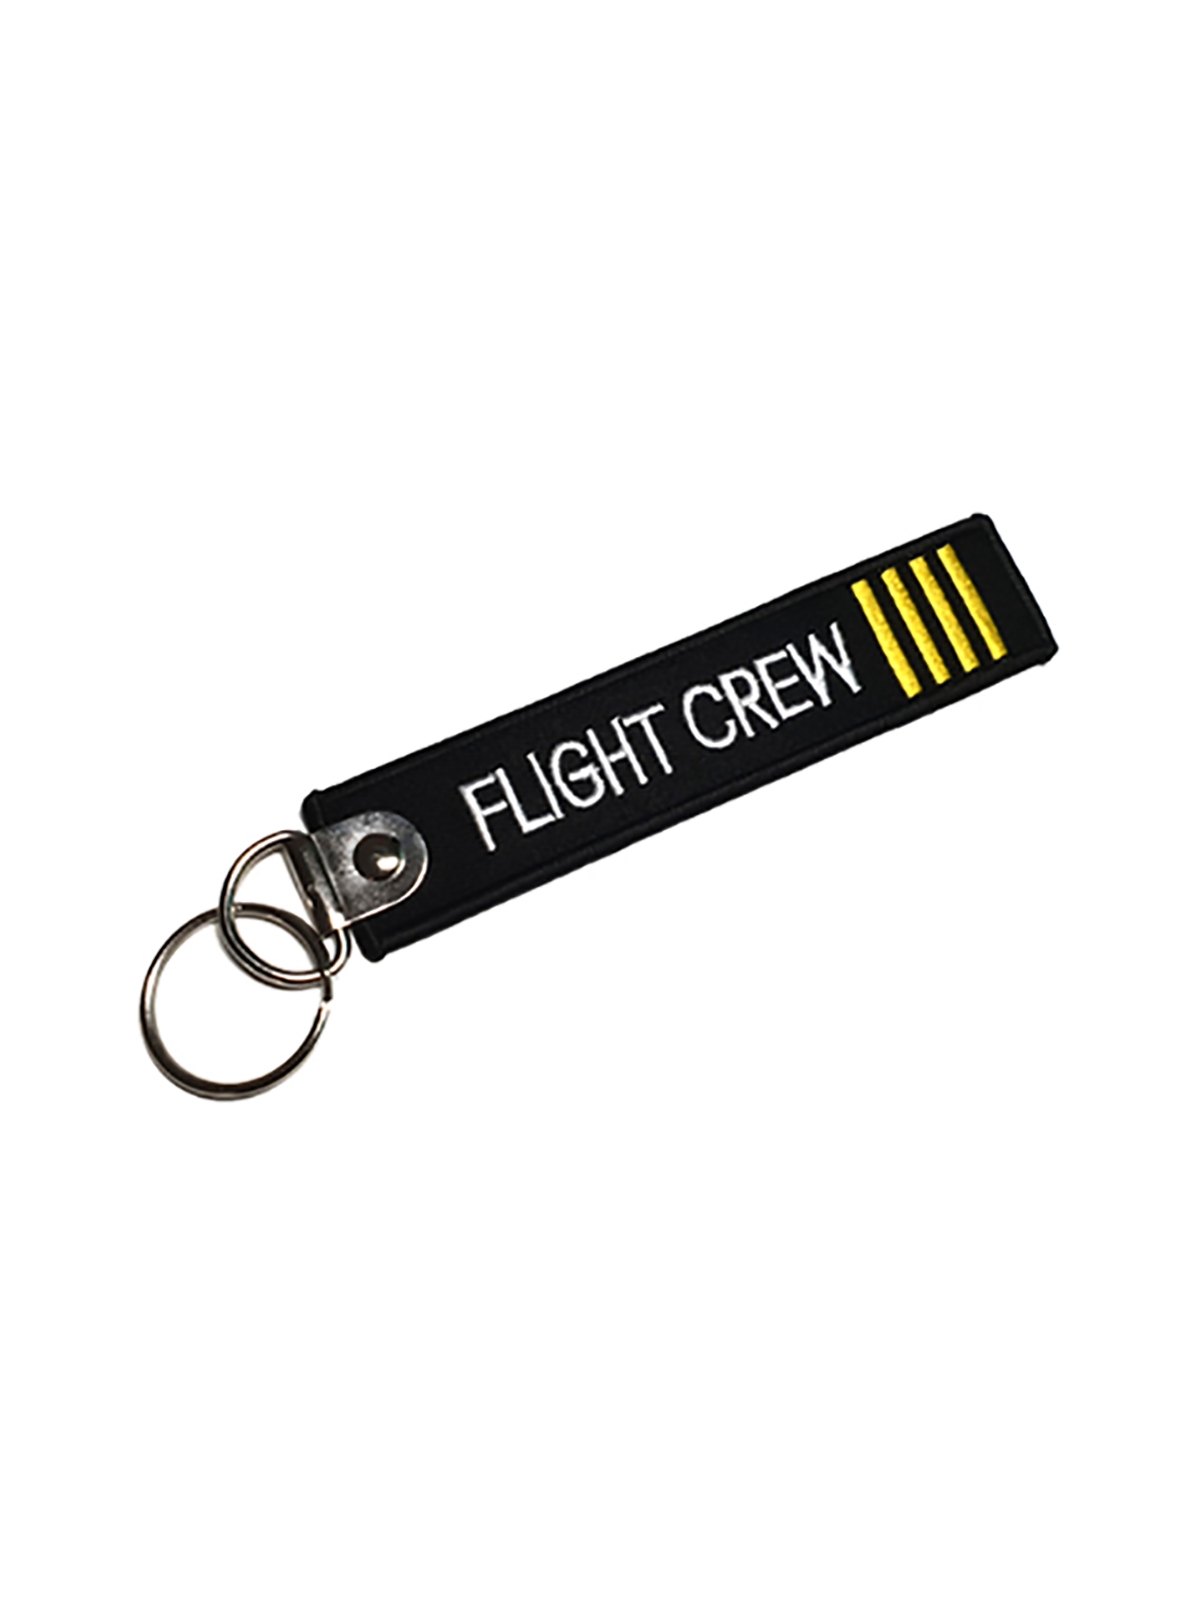 Schlüsselanhänger Flight Crew Cpt.